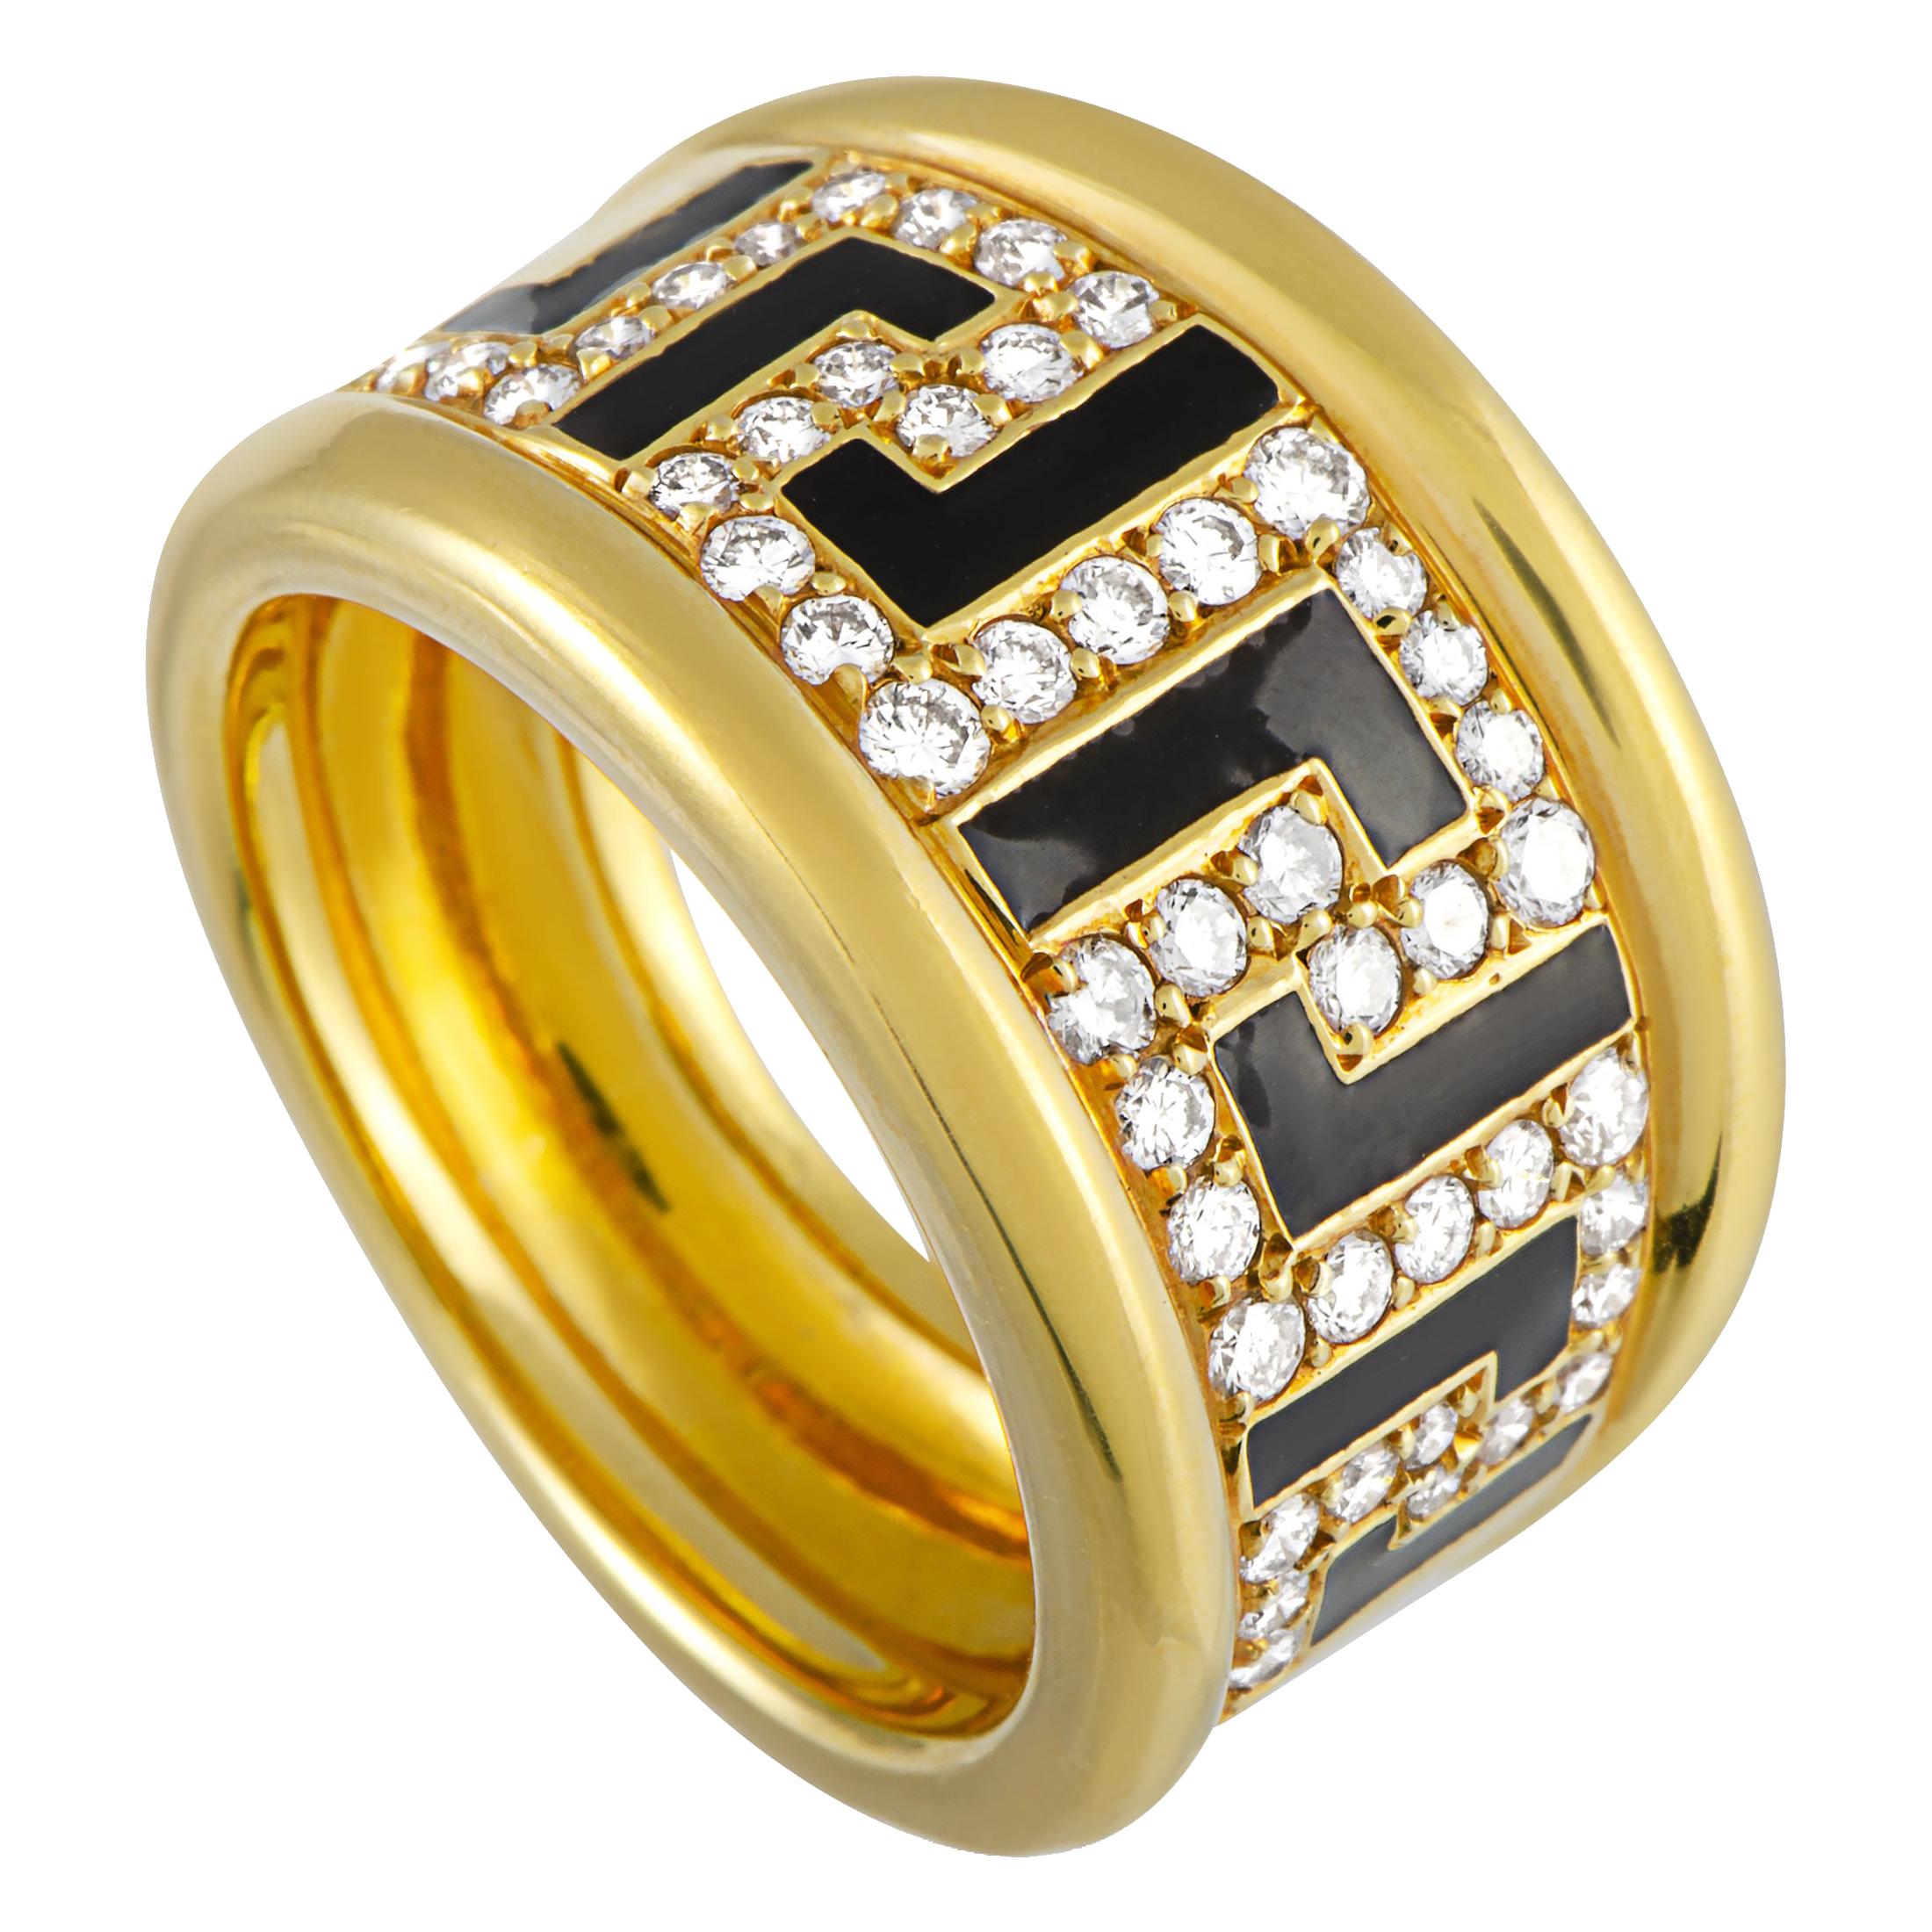 Versace 18 Karat Yellow Gold and Enamel 0.75 Carat Diamond Ring